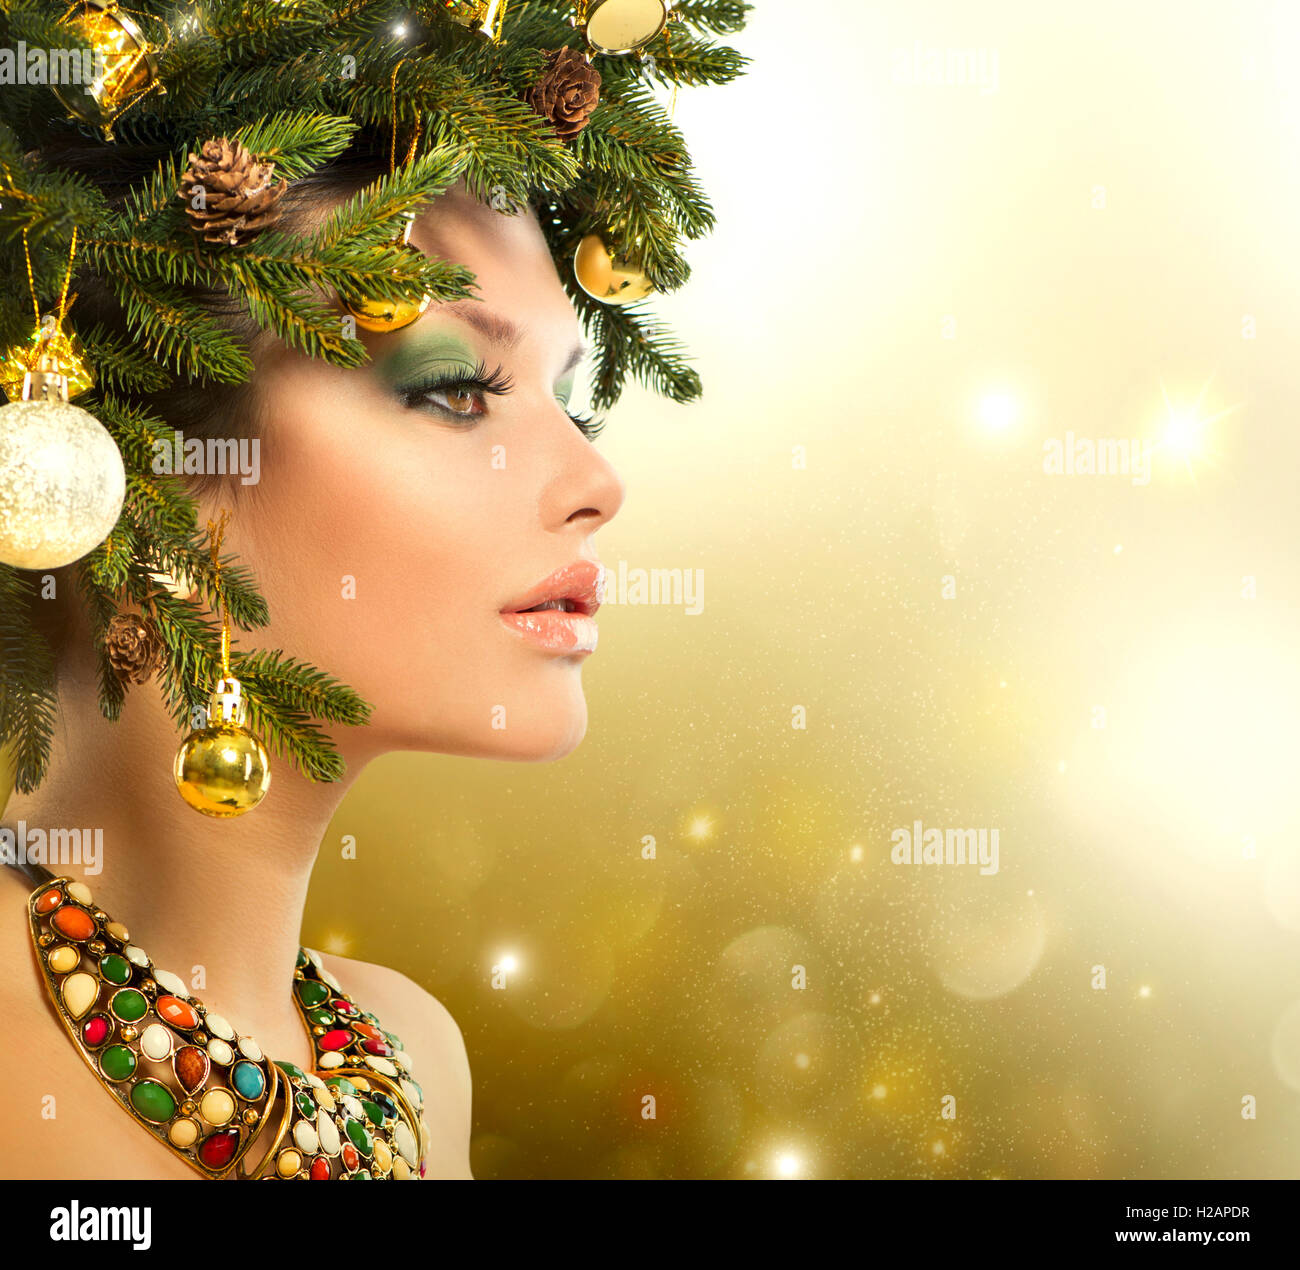 Weihnachten-Frau. Weihnachtsbaum-Urlaub-Frisur und Make-up Stockfoto